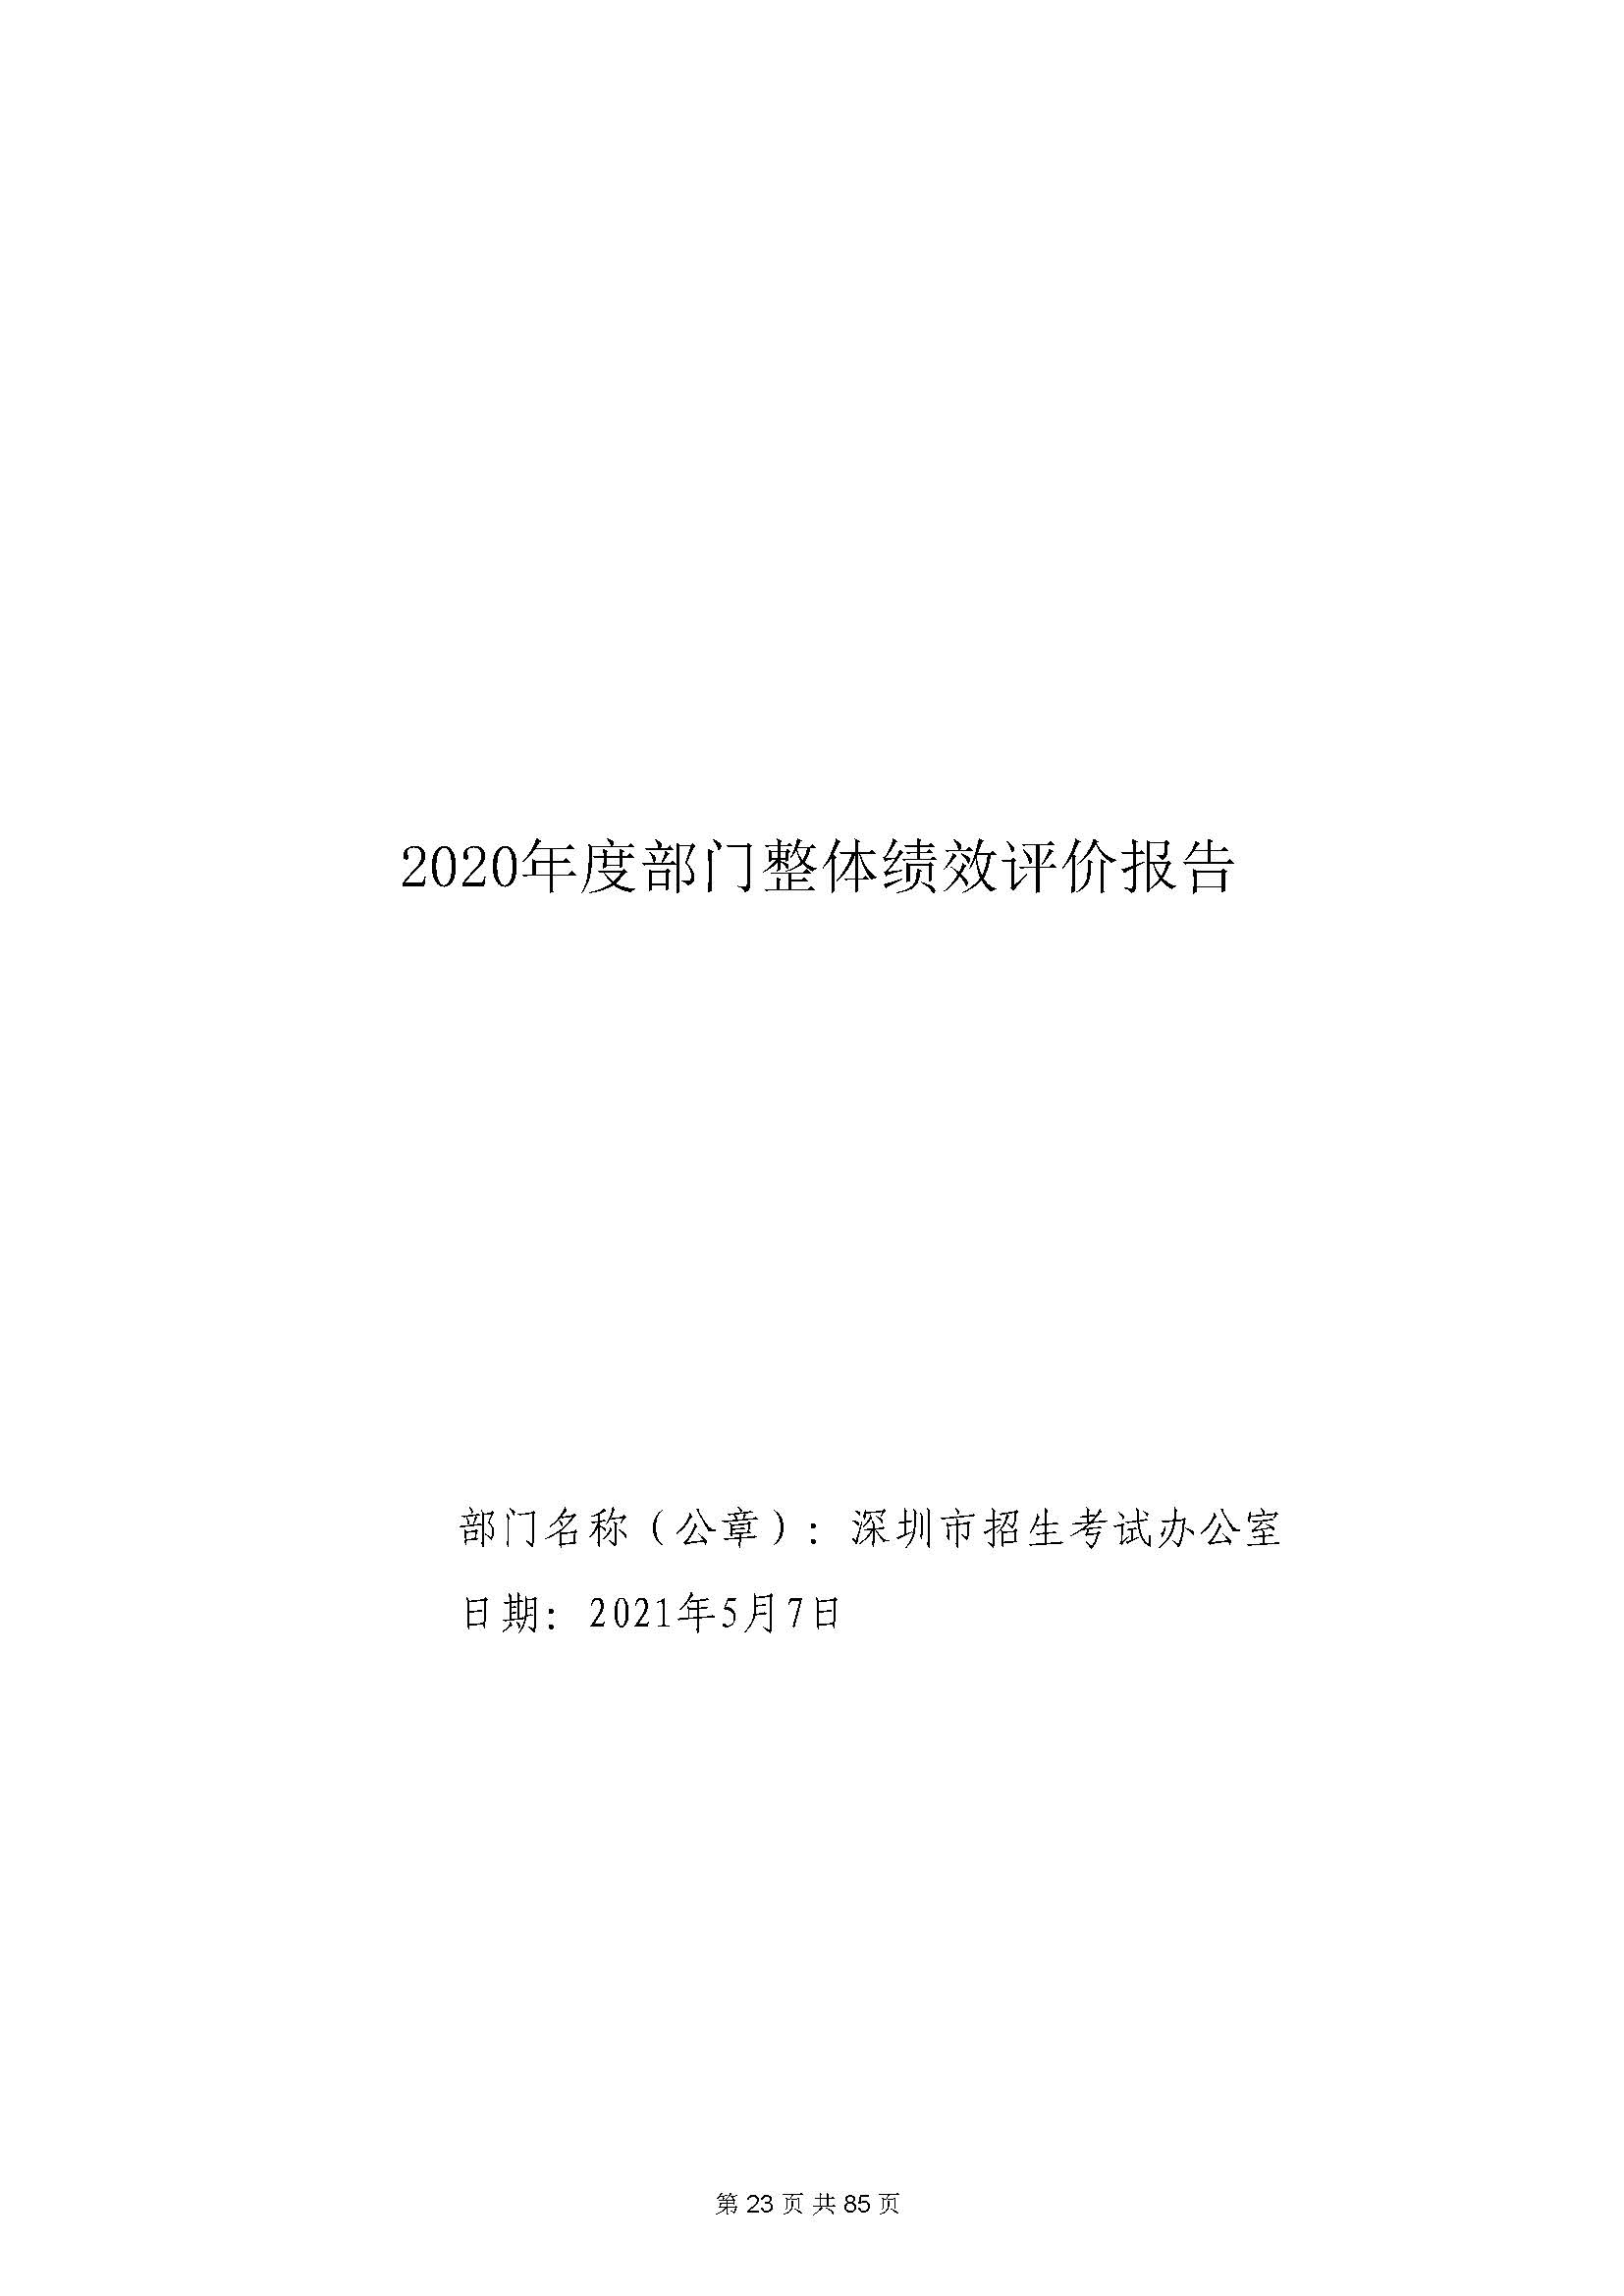 深圳市招生考试办公室2020年度部门决算_页面_24.jpg